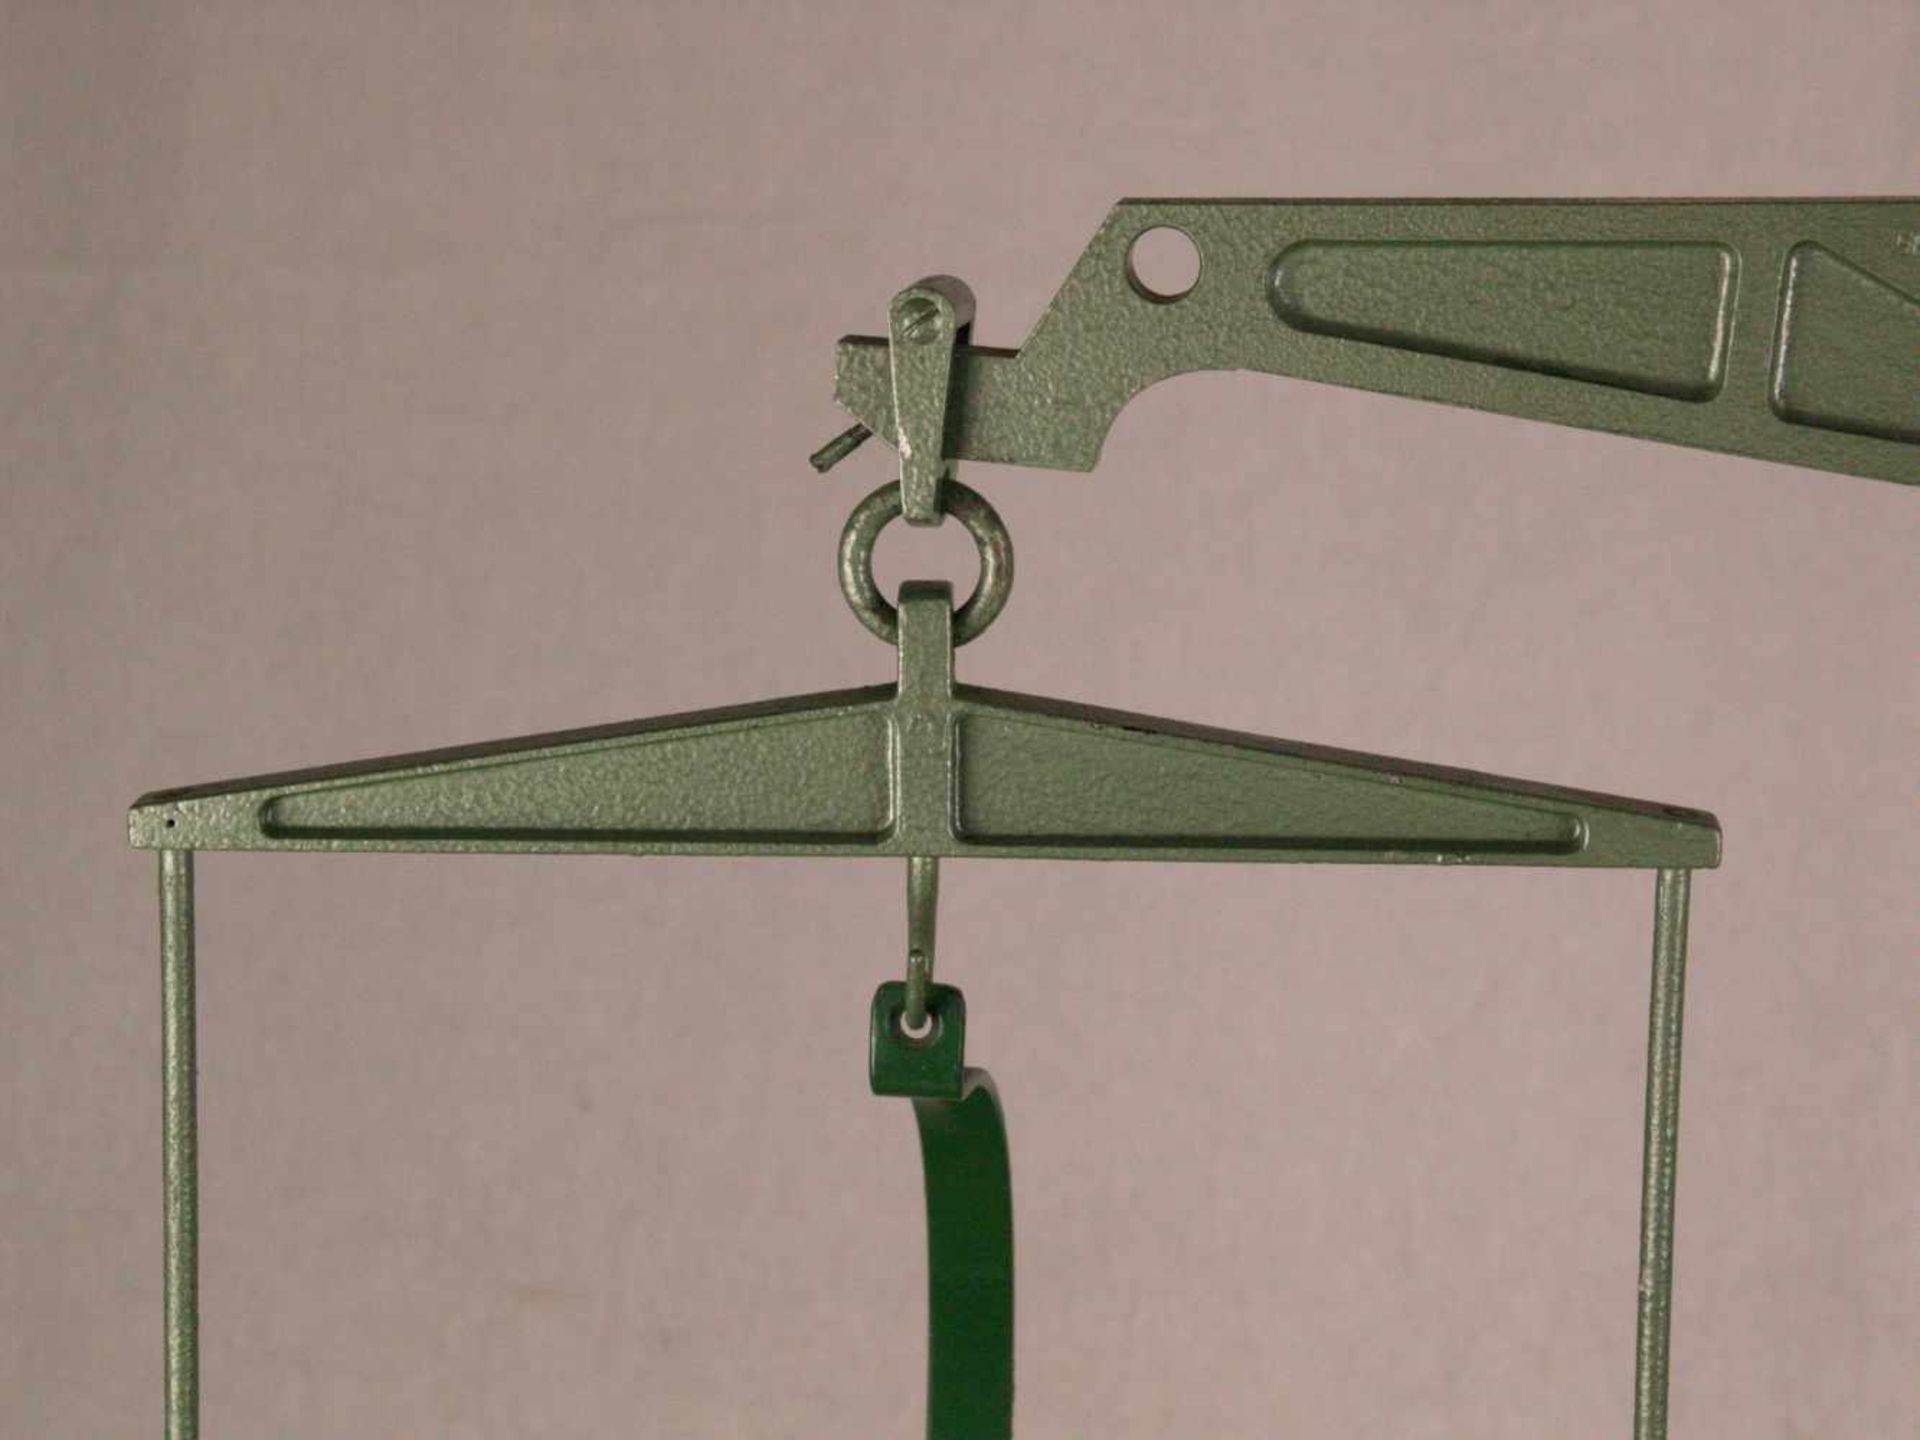 Balkenwaage mit 6 Gewichten - Hersteller: Sartorius-Werke, Göttingen, Nr.P8855, Metallkorpus, grün - Bild 4 aus 10